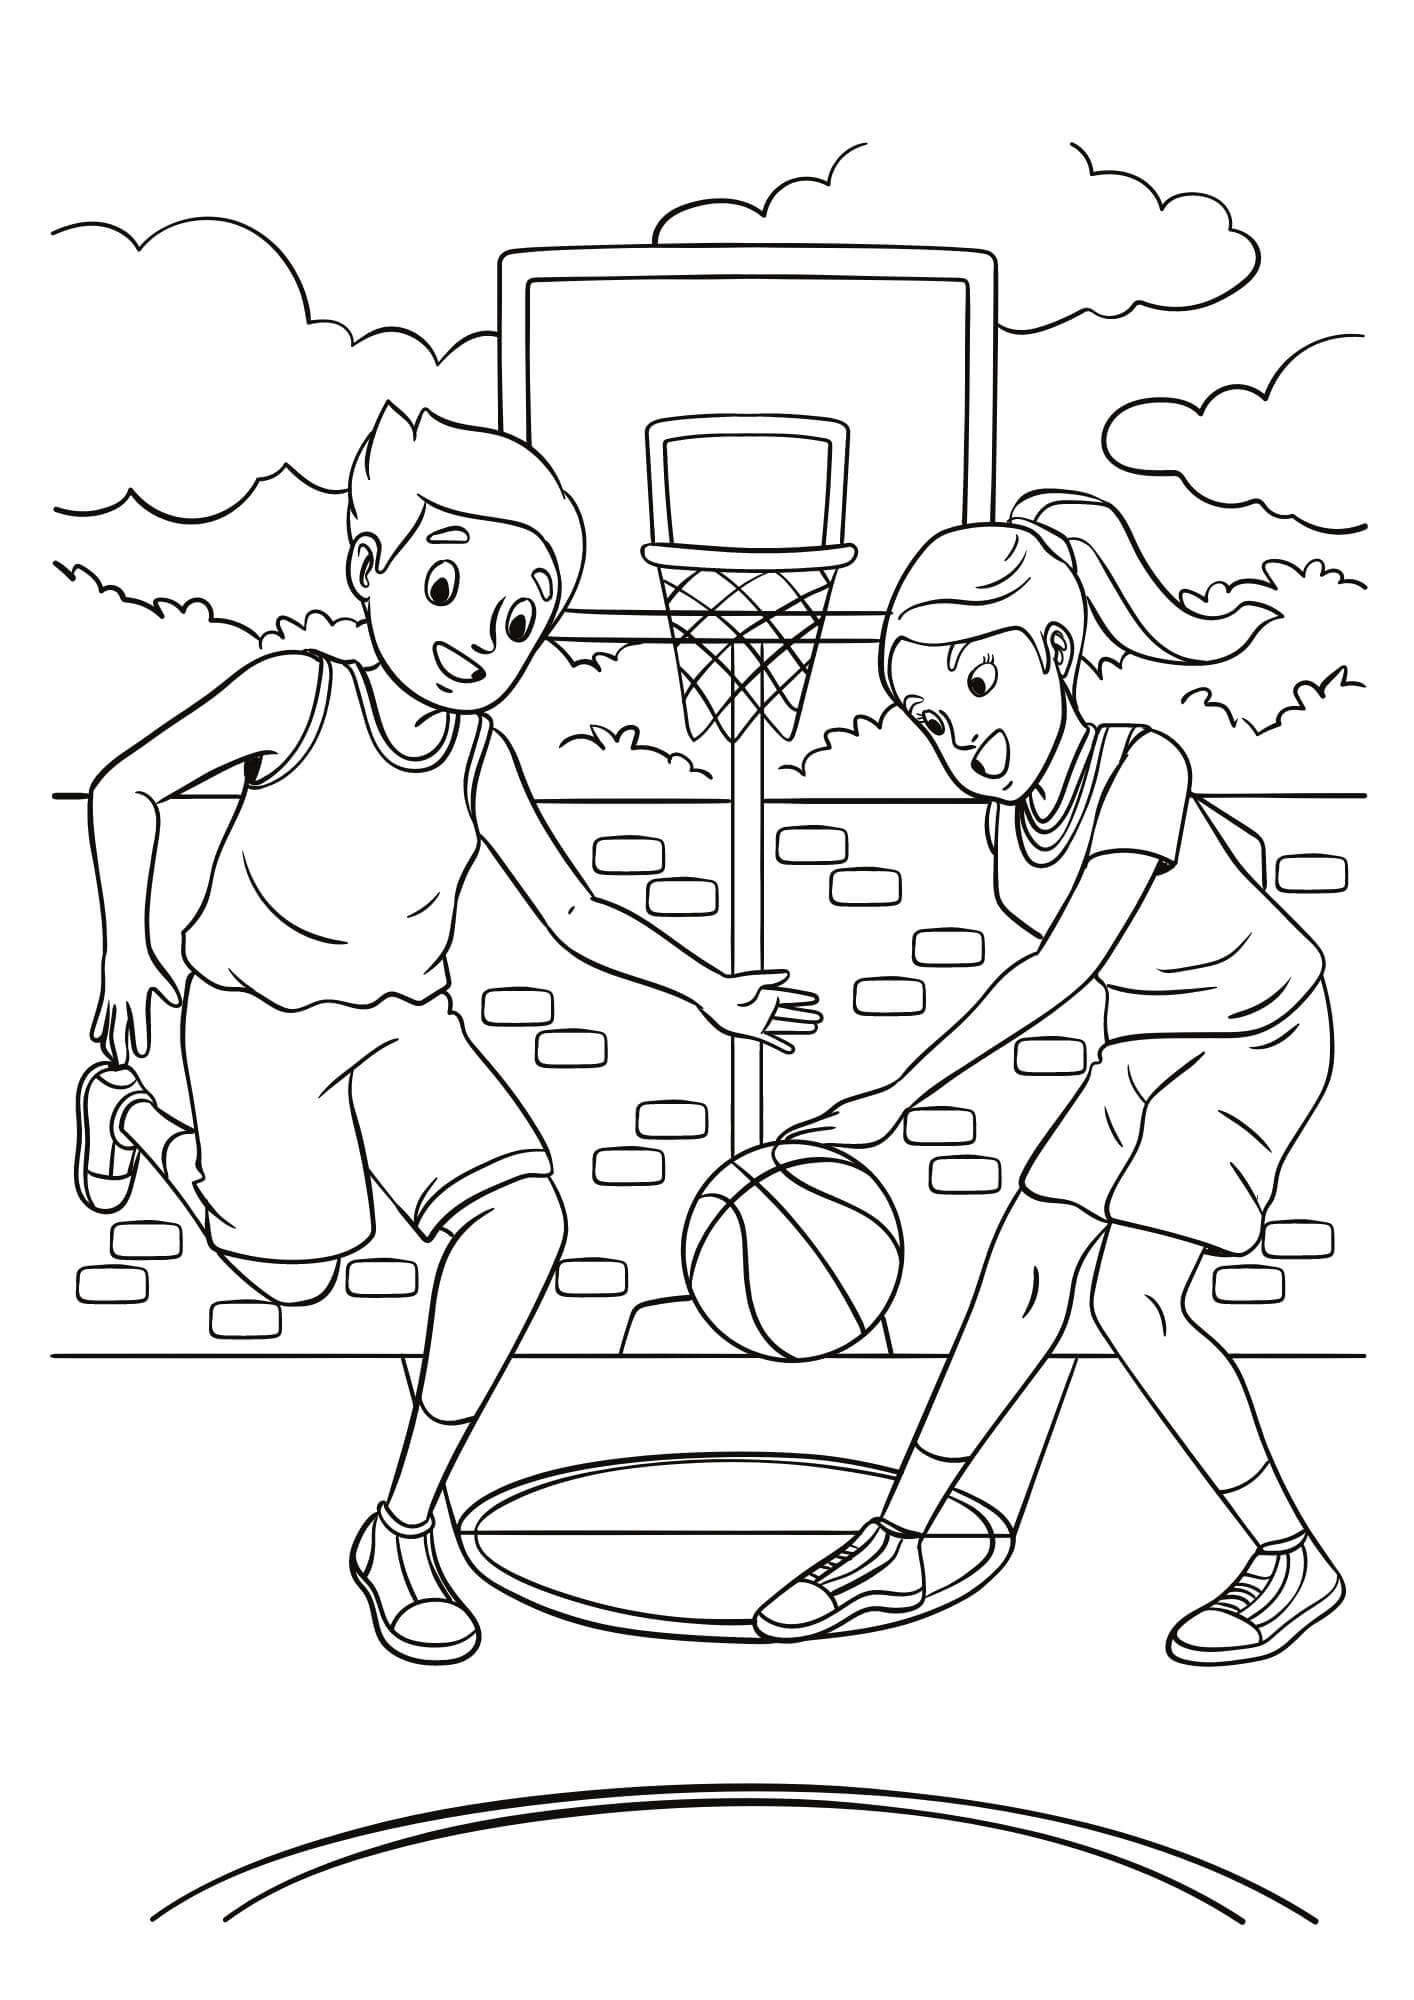 Basketball Color Sheet (Free & Printable)